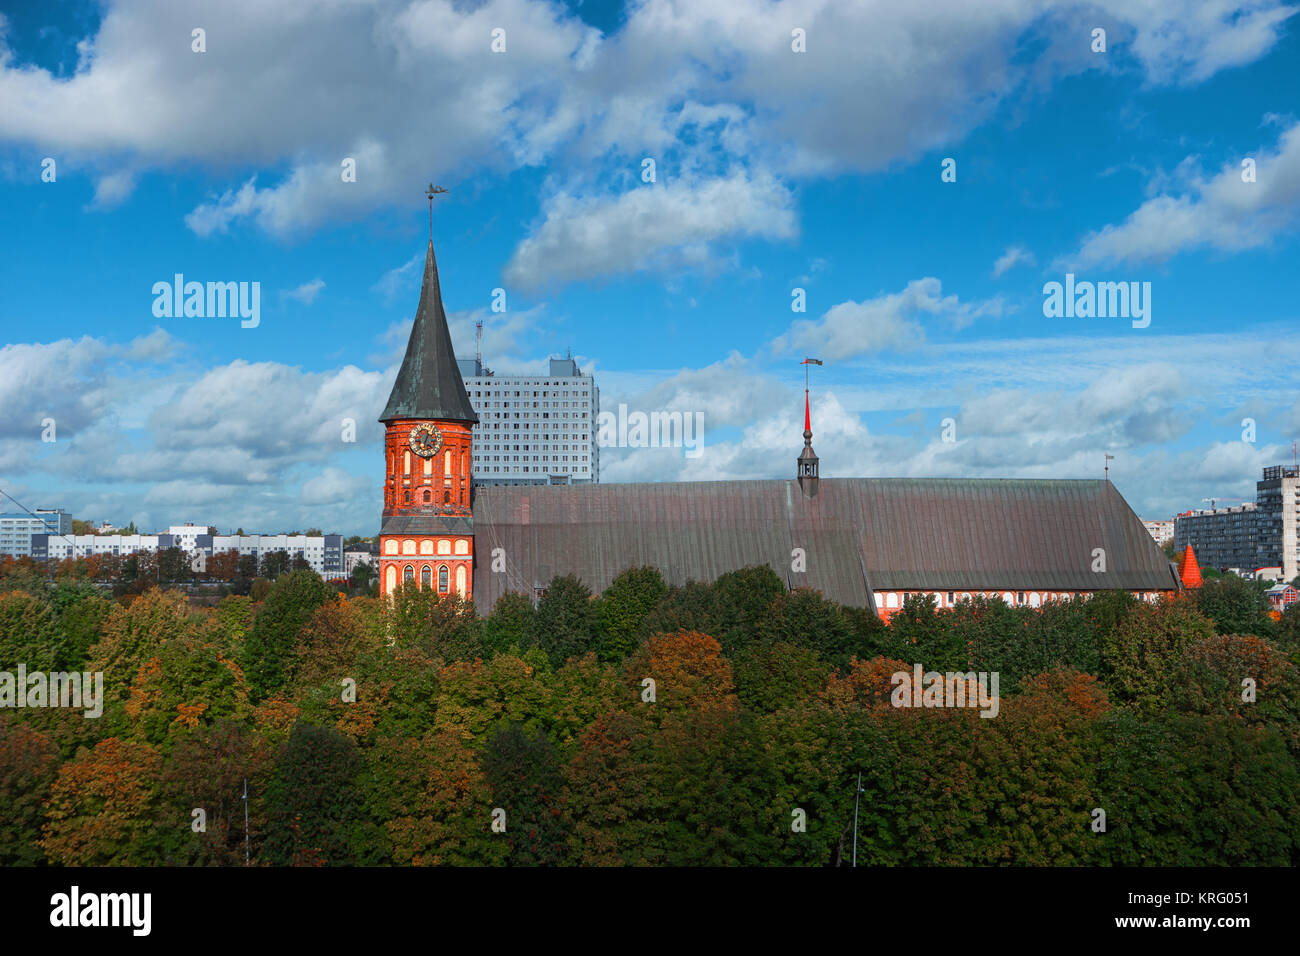 Stadtbild von Kaliningrad, Russland, Europa. Gotische Kathedrale in Kaliningrad, ehemals Königsberg, Deutschland. Schönen blick auf Kant Insel. Die cent Stockfoto